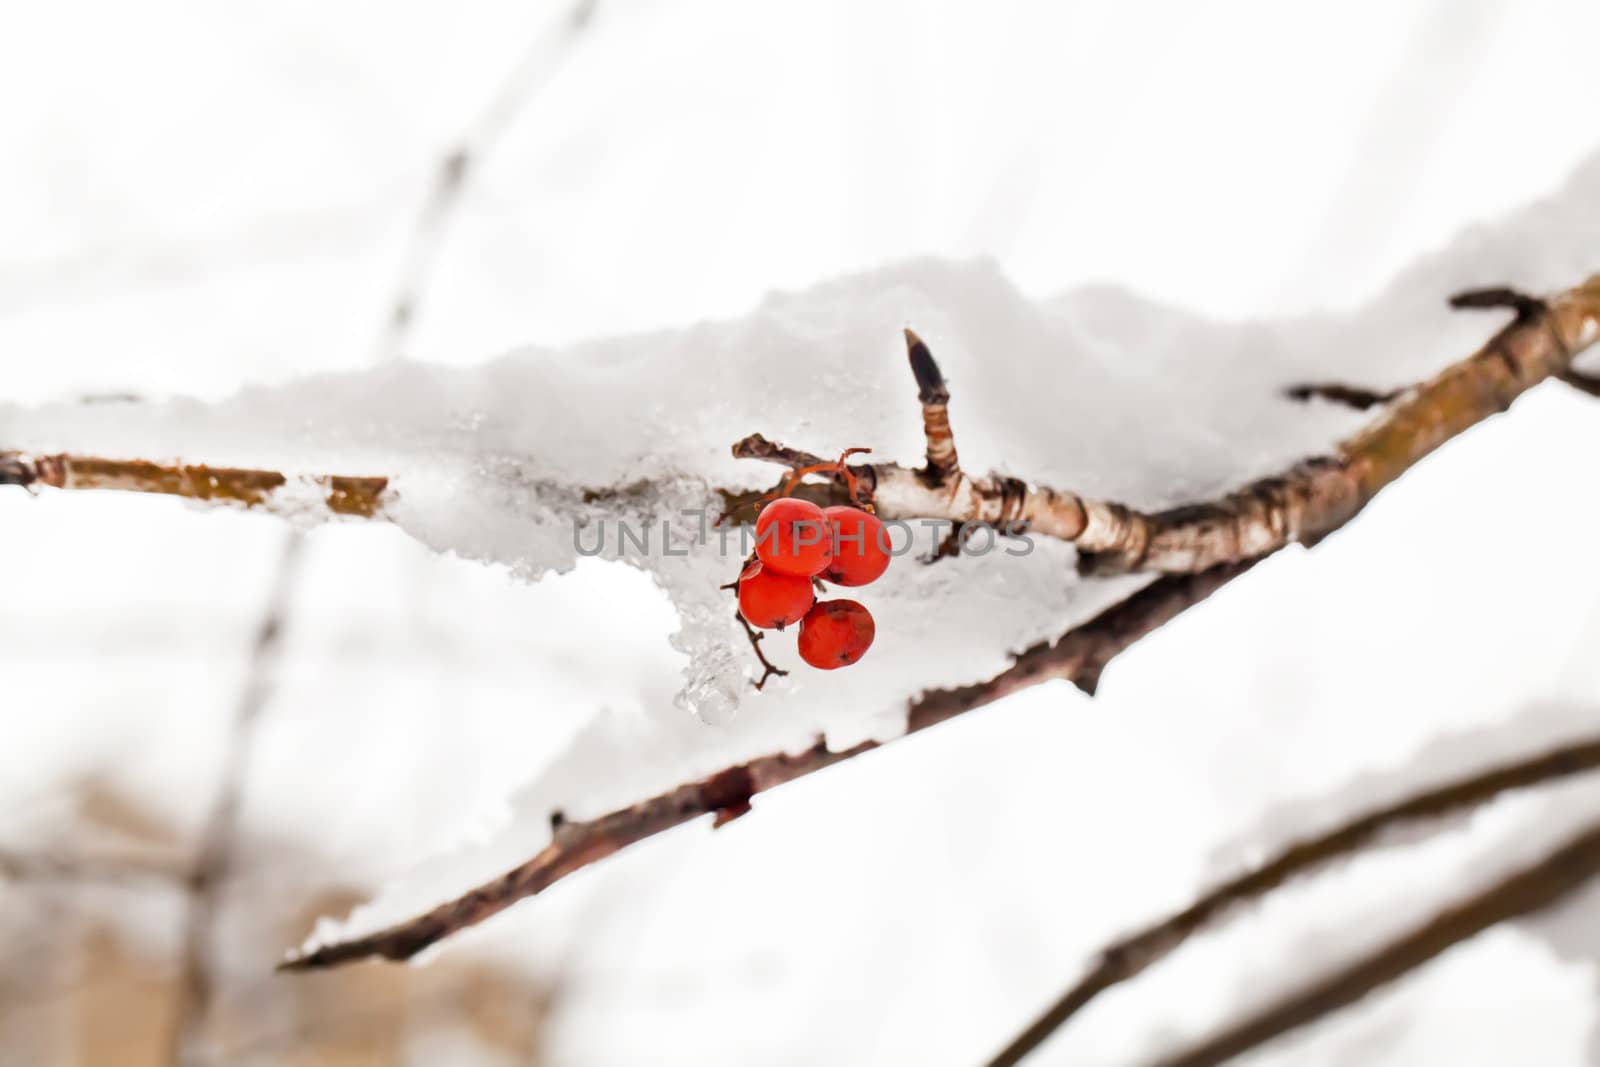 Red berries of rowan tree under snow in winter